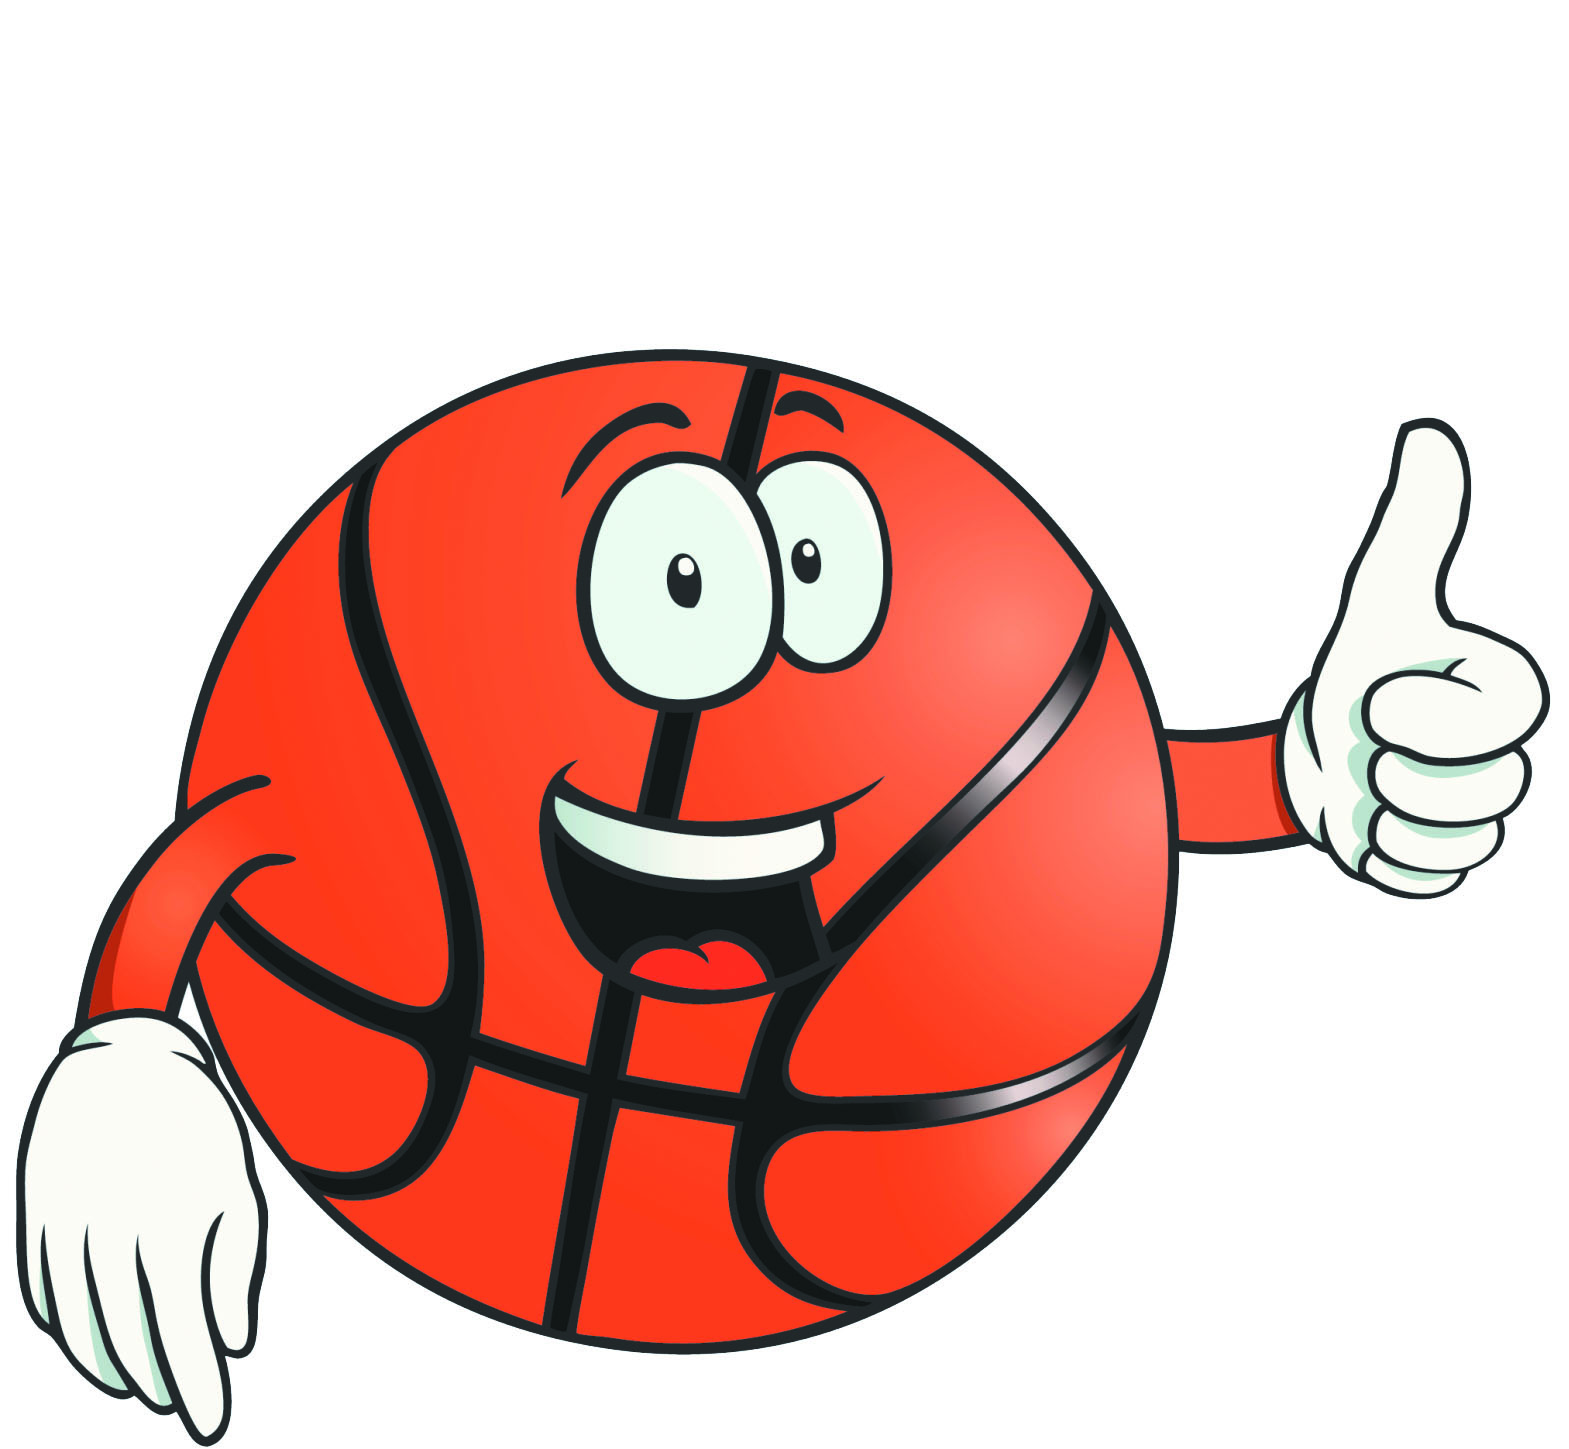 Basketball Cartoon Images - ClipArt Best